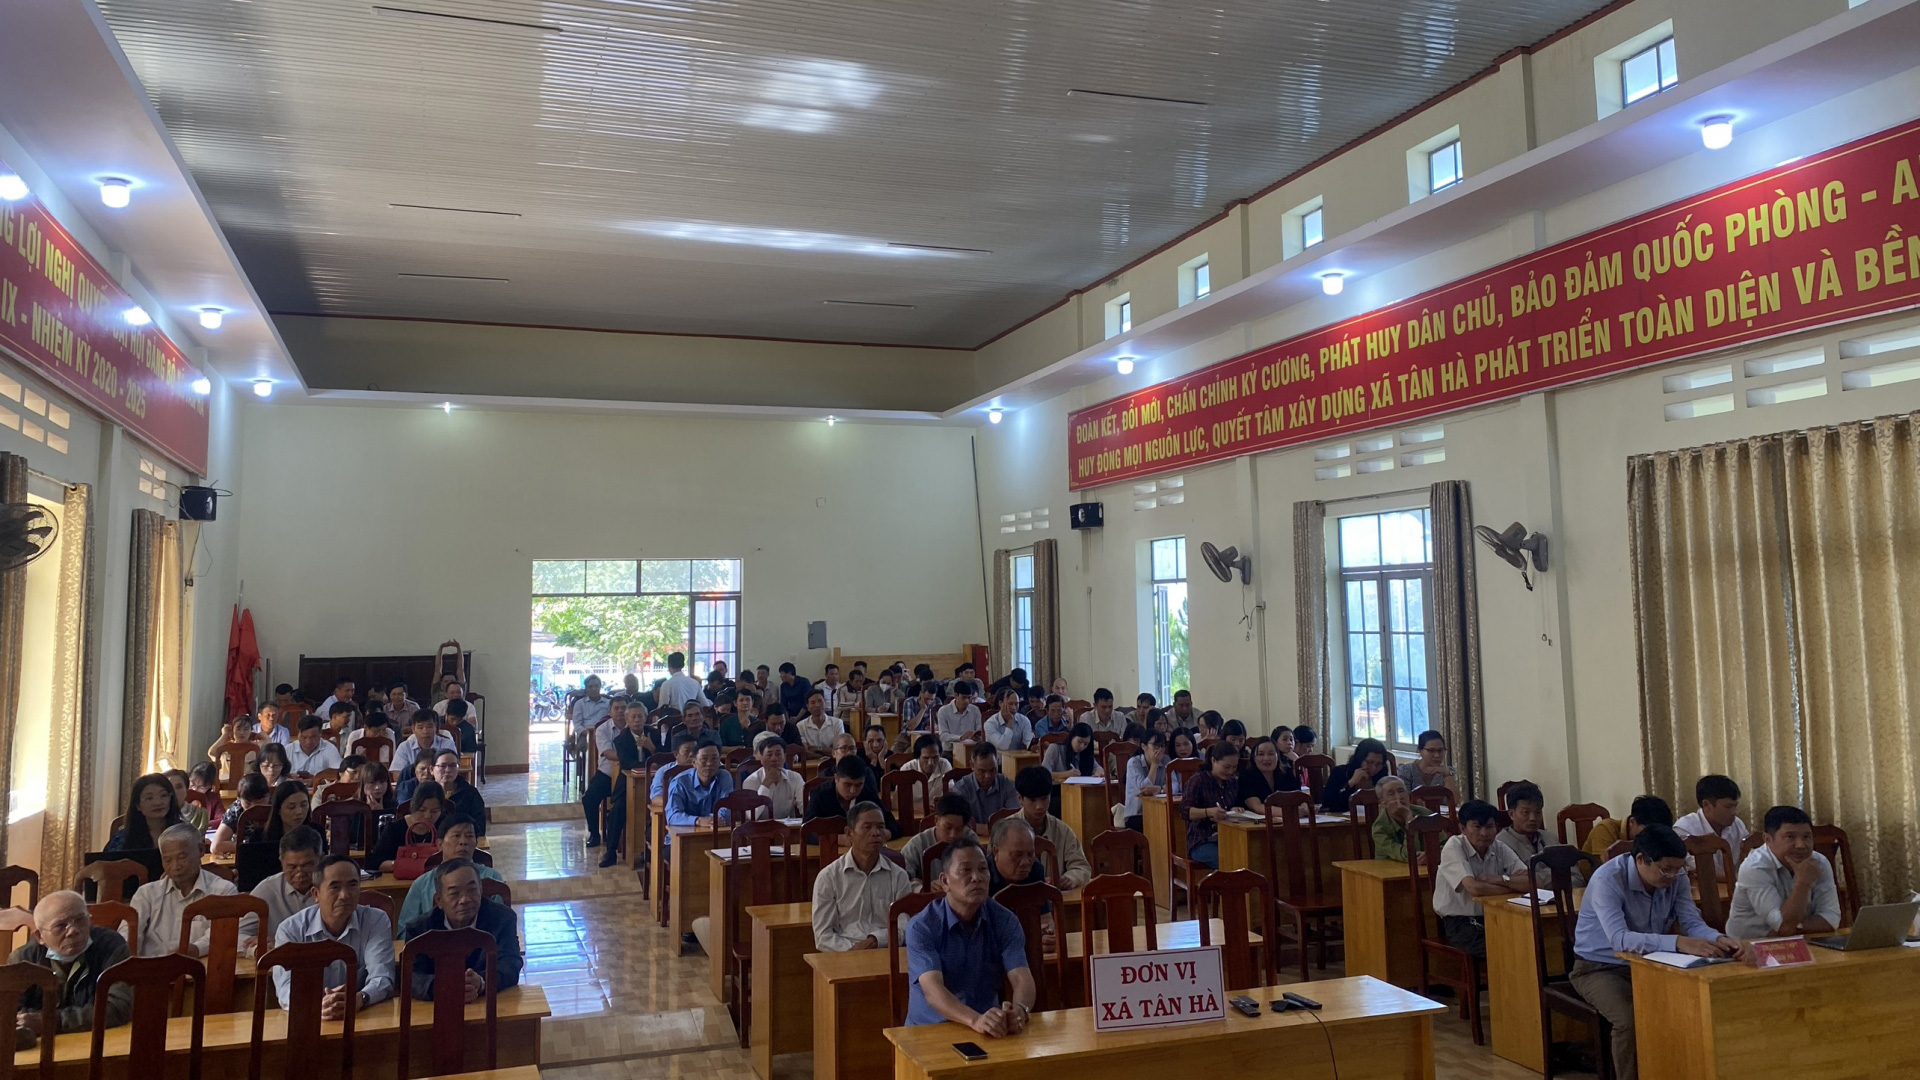 Lâm Hà: Hơn 4.000 cán bộ, đảng viên nghe quán triệt Chỉ thị 34 của Ban Thường vụ Tỉnh ủy Lâm Đồng